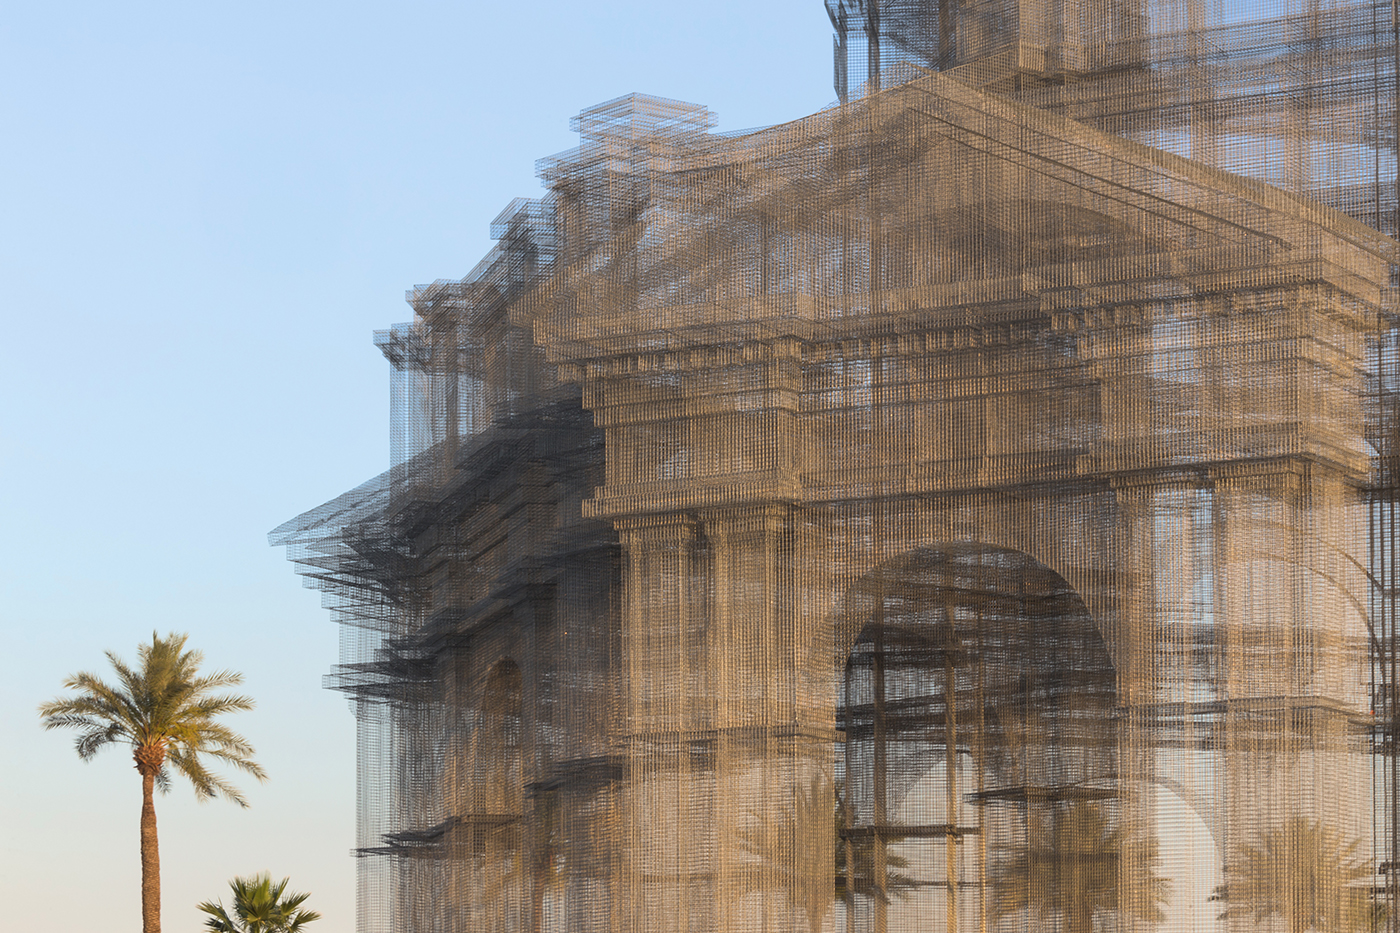 Cattedrali barocche nel deserto californiano. L’installazione di Edoardo Tresoldi per il festival Coachella